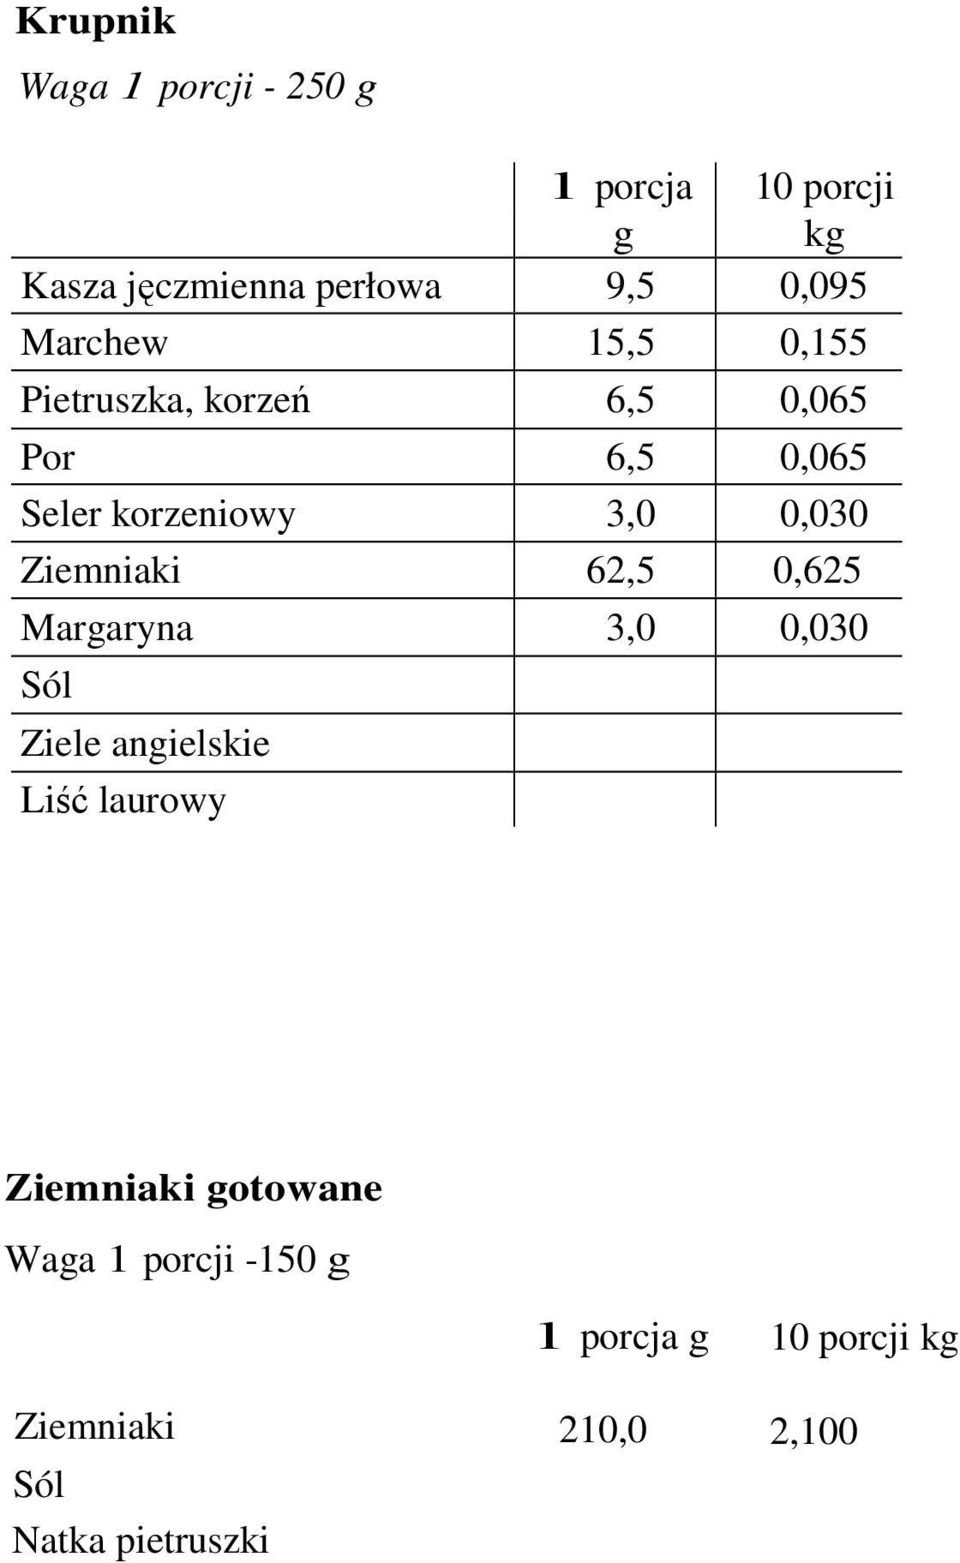 Ziemniaki 62,5 0,625 Margaryna 3,0 0,030 Ziele angielskie Liść laurowy Ziemniaki